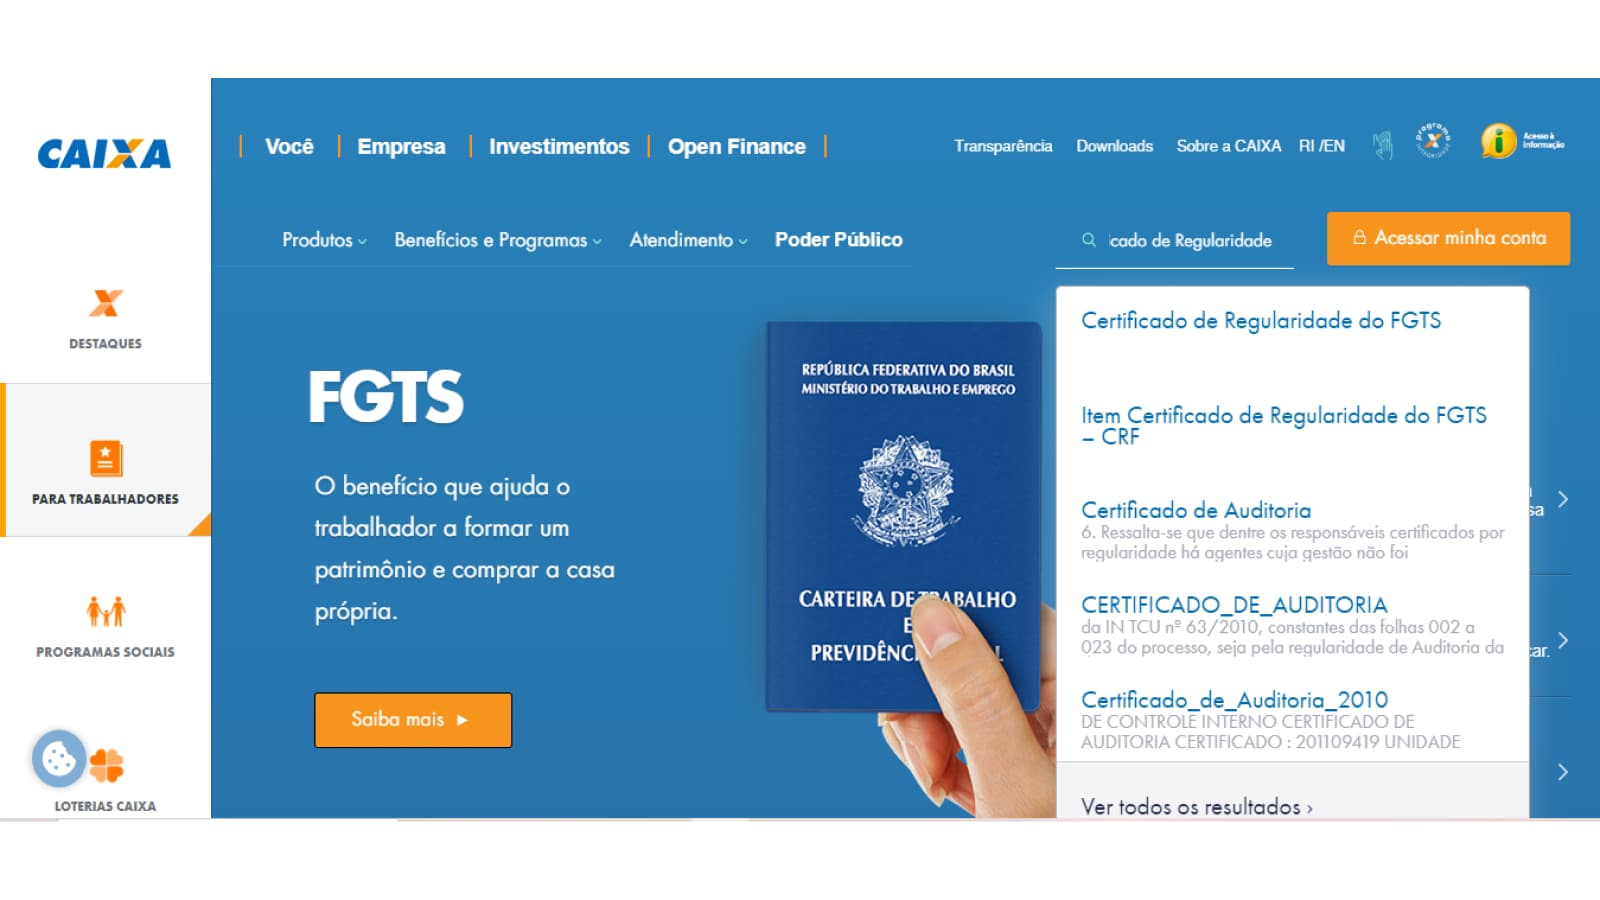 Tela de busca por Certificado de Regularidade do FGTS no site da Caixa